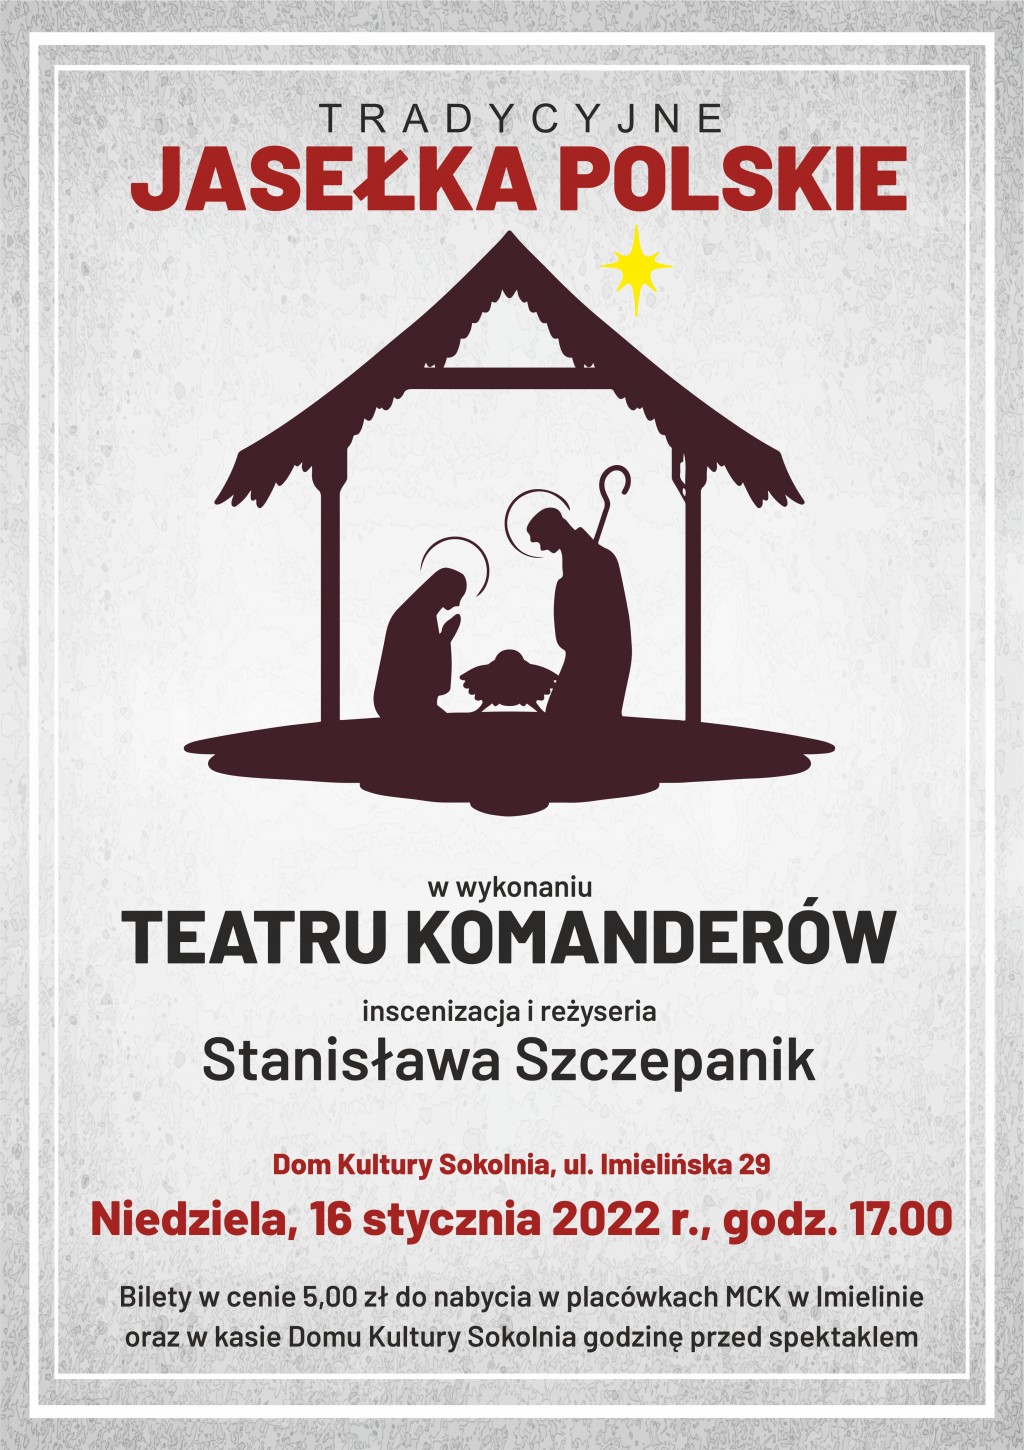 16  stycznia (niedziela) – godz. 17:00 – Dom Kultury „Sokolnia” – Jasełka Polskie